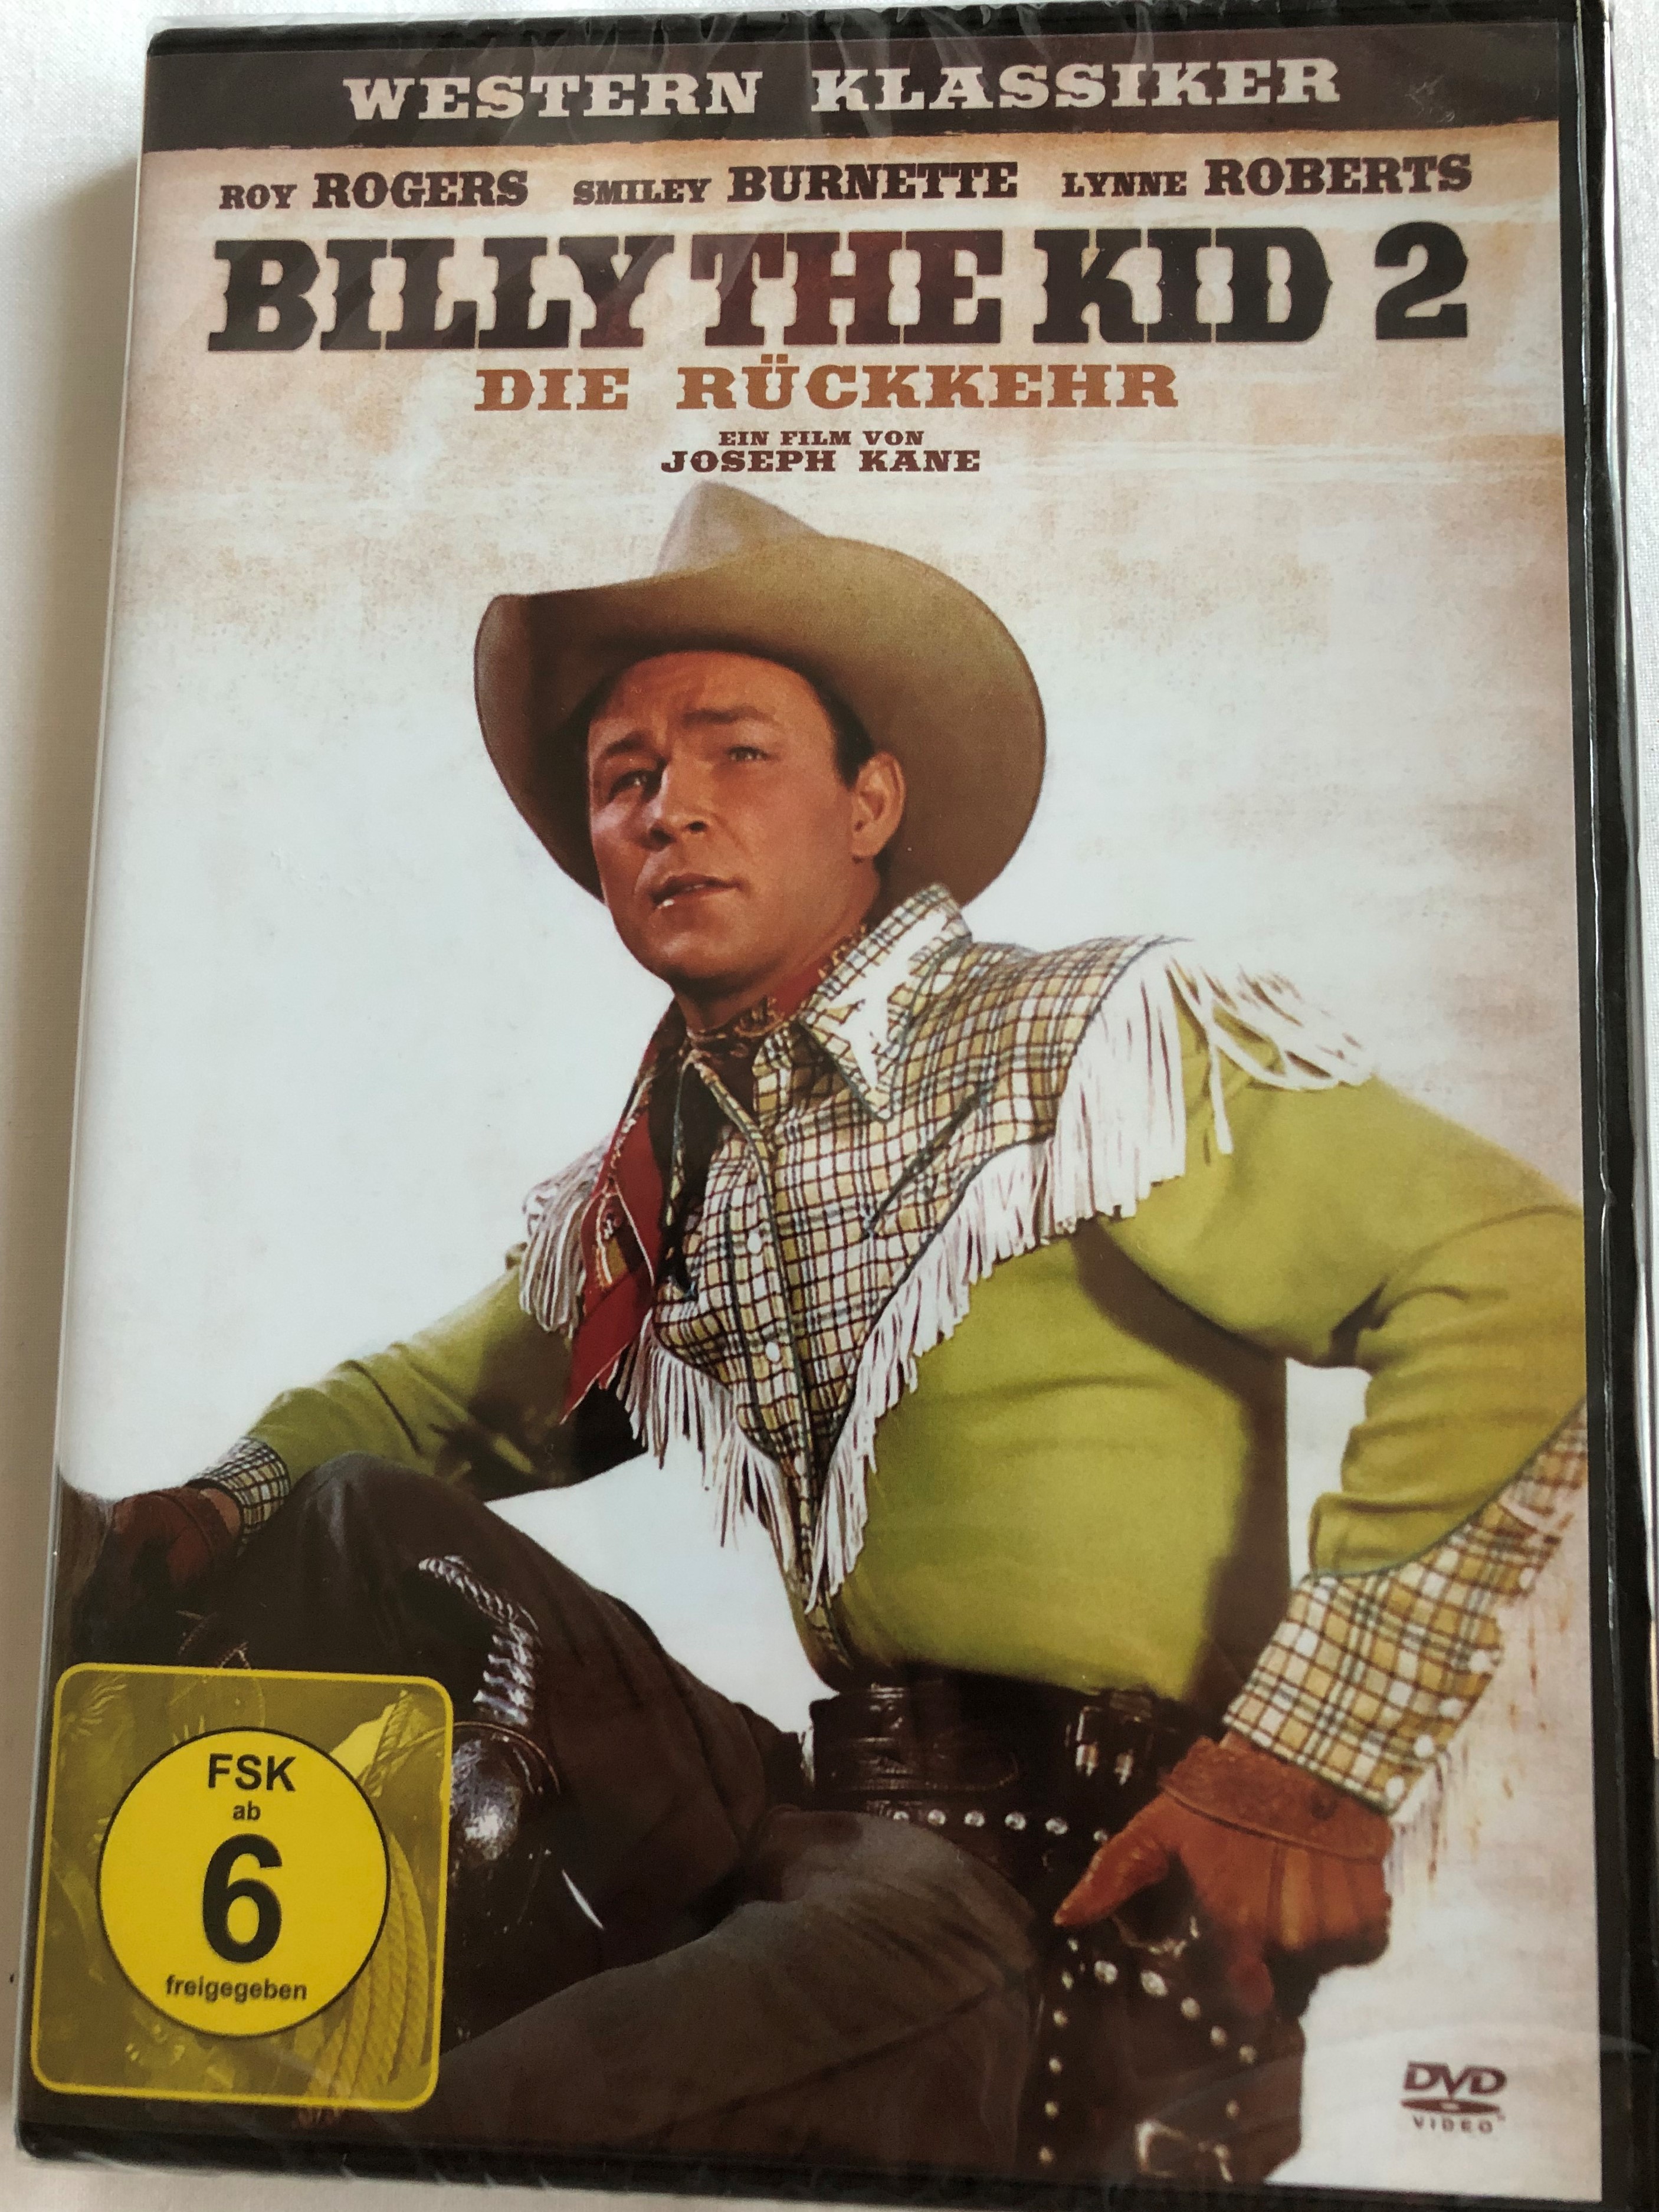 billy-the-kid-2-die-r-ckkehr-dvd-1938-billy-the-kid-2-directed-by-joseph-kane-starring-roy-rogers-smiley-burnette-lynne-roberts-western-klassiker-1-.jpg